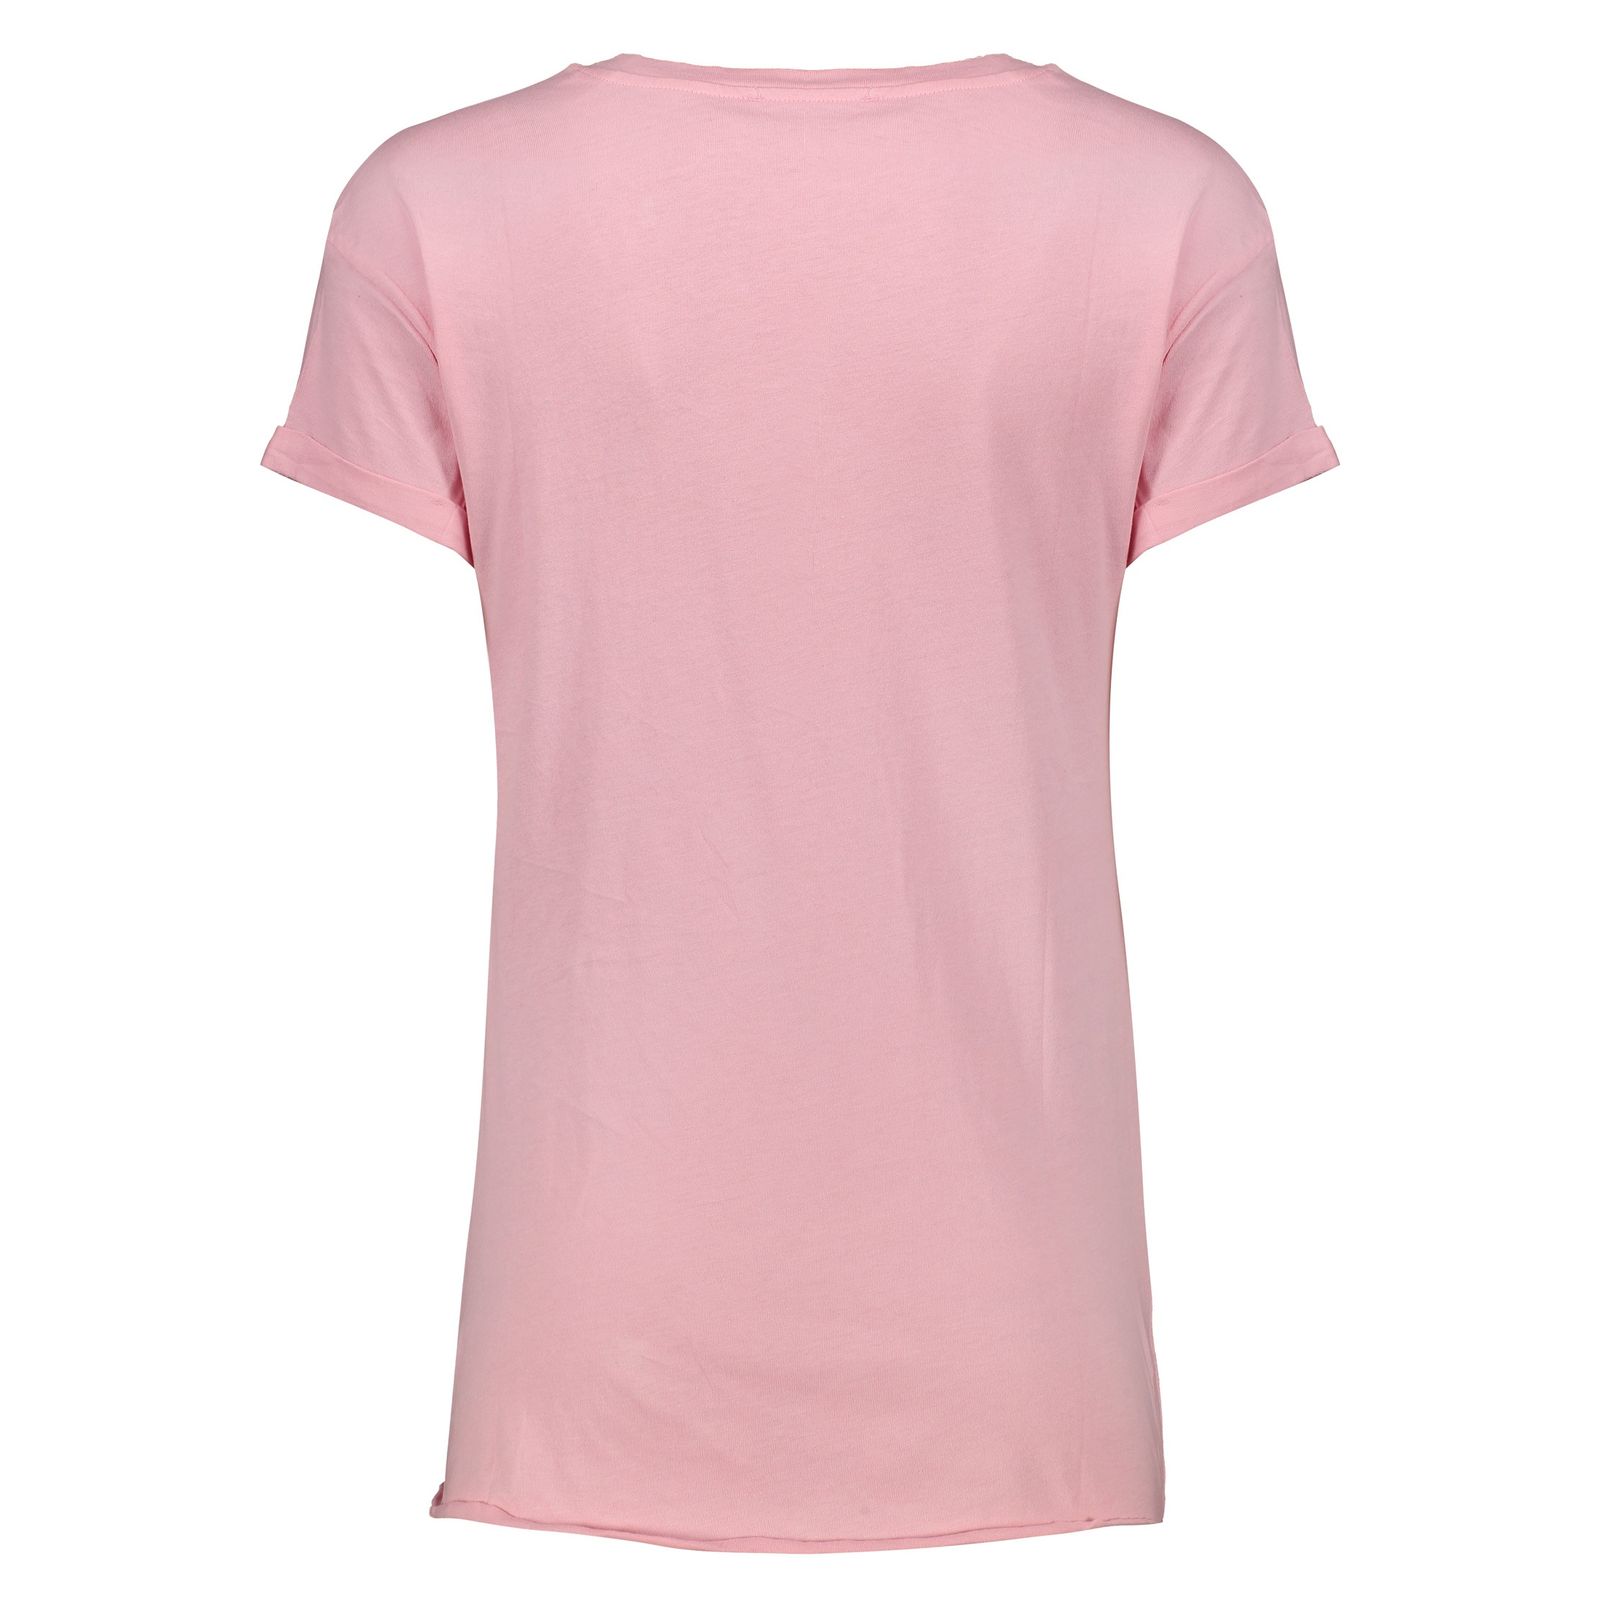 تی شرت زنانه کالینز مدل CL1034147-PINK - صورتی - 3